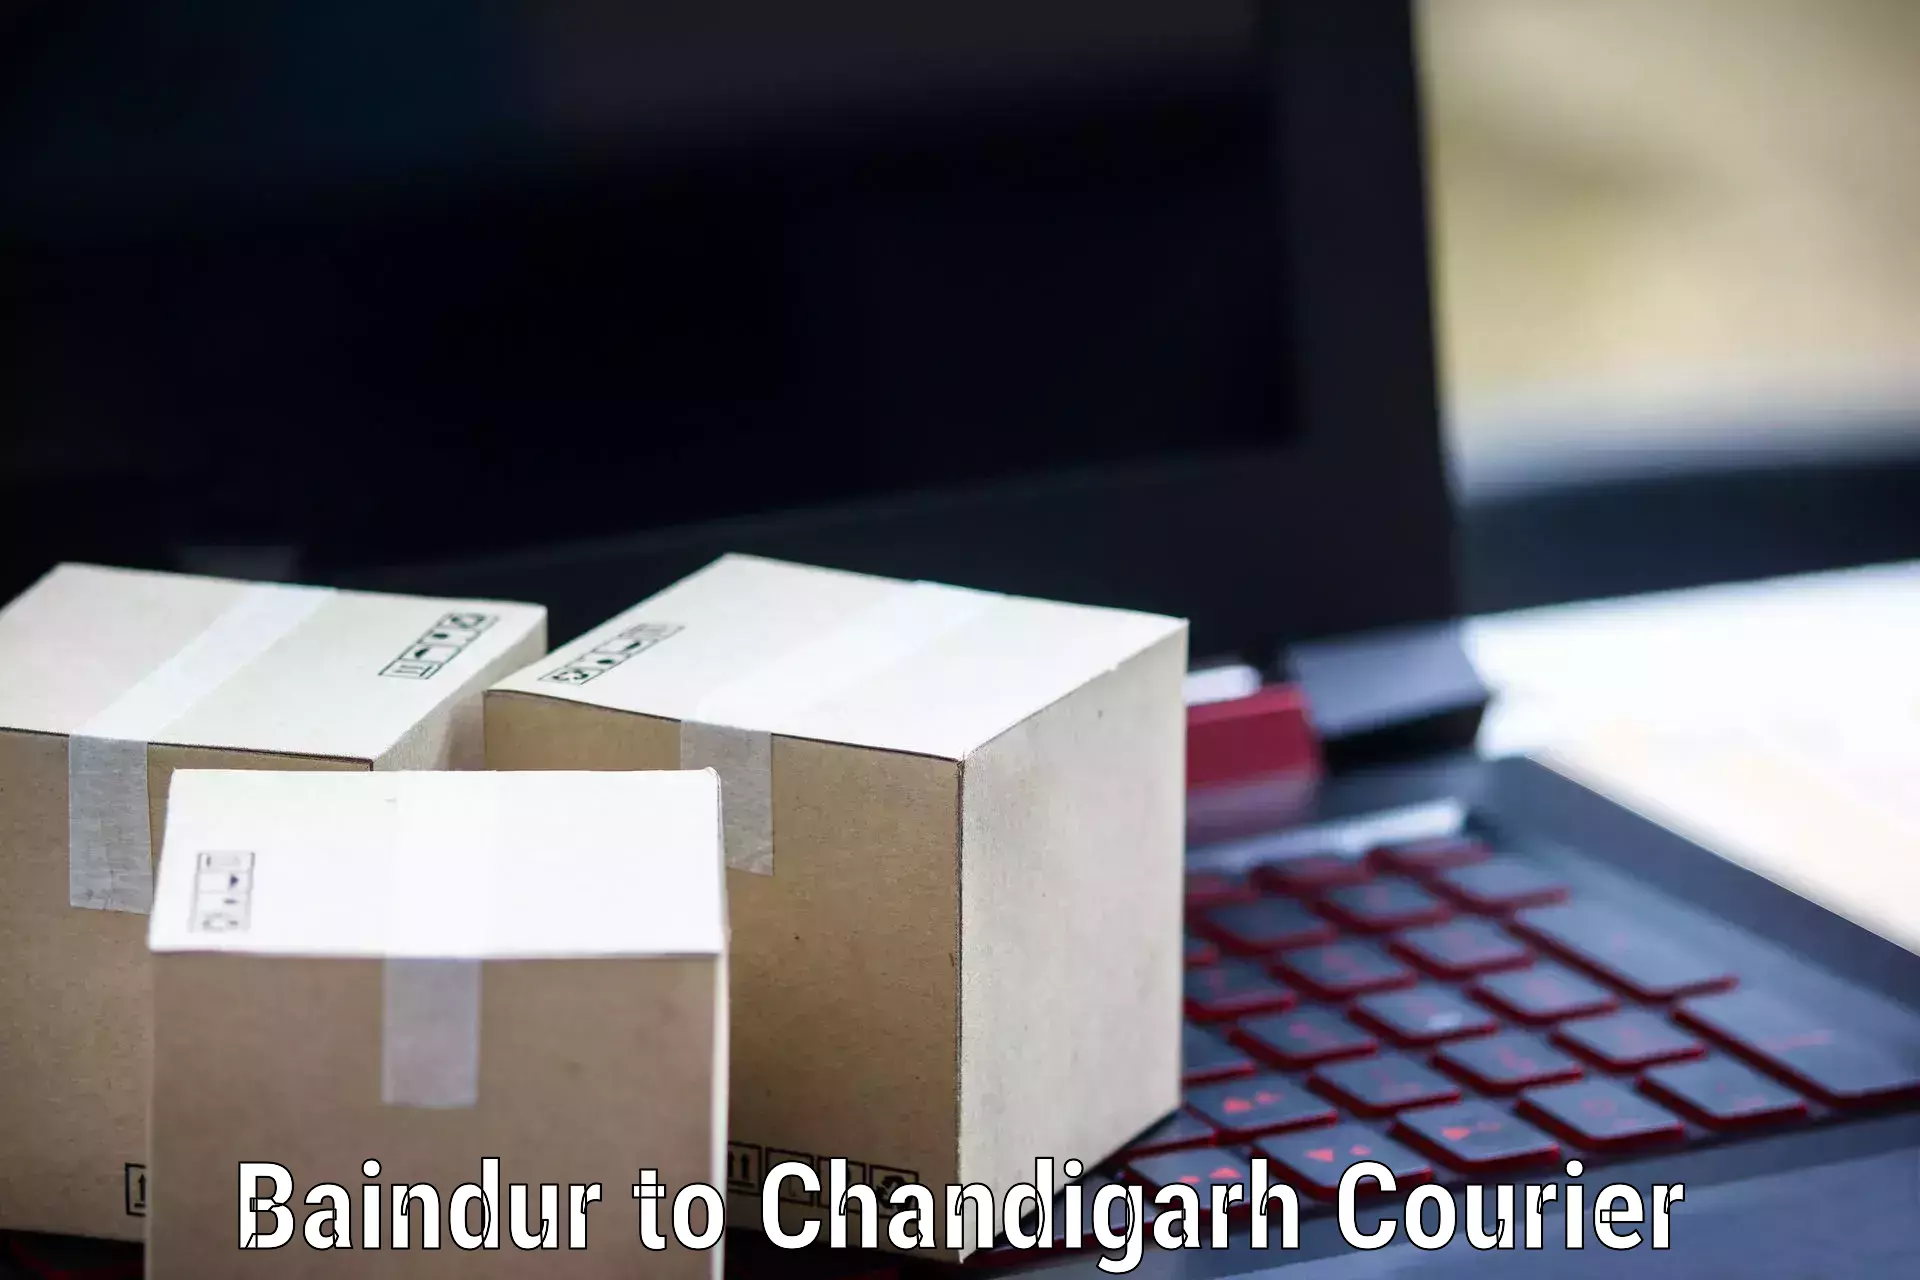 Efficient parcel service Baindur to Chandigarh